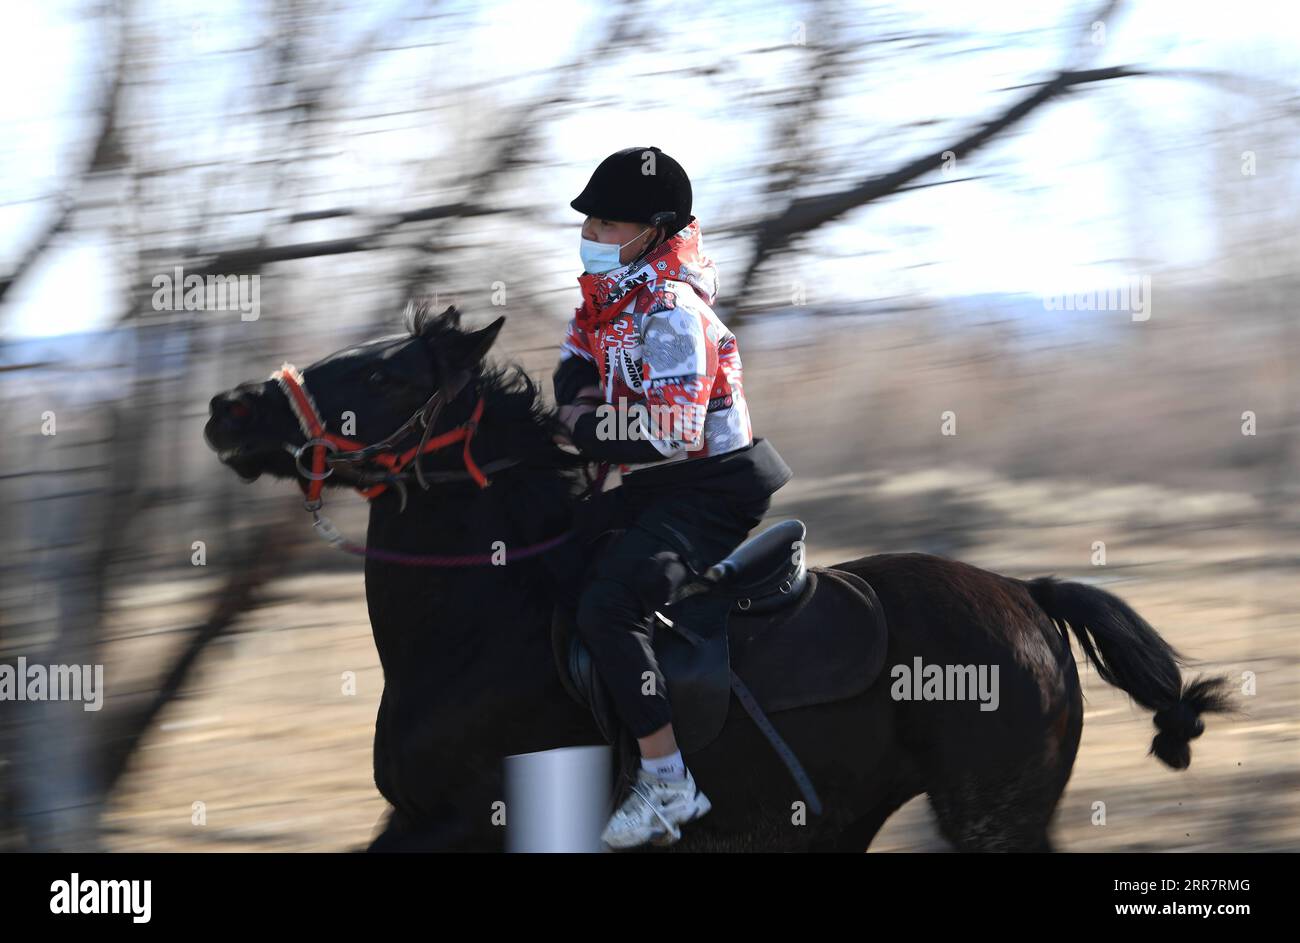 210403 -- BURQIN, 3 aprile 2021 -- Parasat Zhumabek, uno studente senventh della Oymak Boarding School, cavalca un cavallo durante una classe equestre nella contea di Burqin, nella regione autonoma dello Xinjiang Uygur della Cina nord-occidentale, 30 marzo 2021. Le persone nella regione autonoma di Xinjiang Uygur hanno una tradizione di allevamento e equitazione. La Oymak Boarding School ha iniziato a offrire lezioni di equitazione alla fine del 2019. Gli studenti, la maggior parte dei quali provengono da famiglie di pastori, imparano sia la conoscenza teorica che la pratica dell'equitazione nelle classi equestri. Dopo le lezioni, gli studenti diventano più forti fisicamente e amano la vita A. Foto Stock